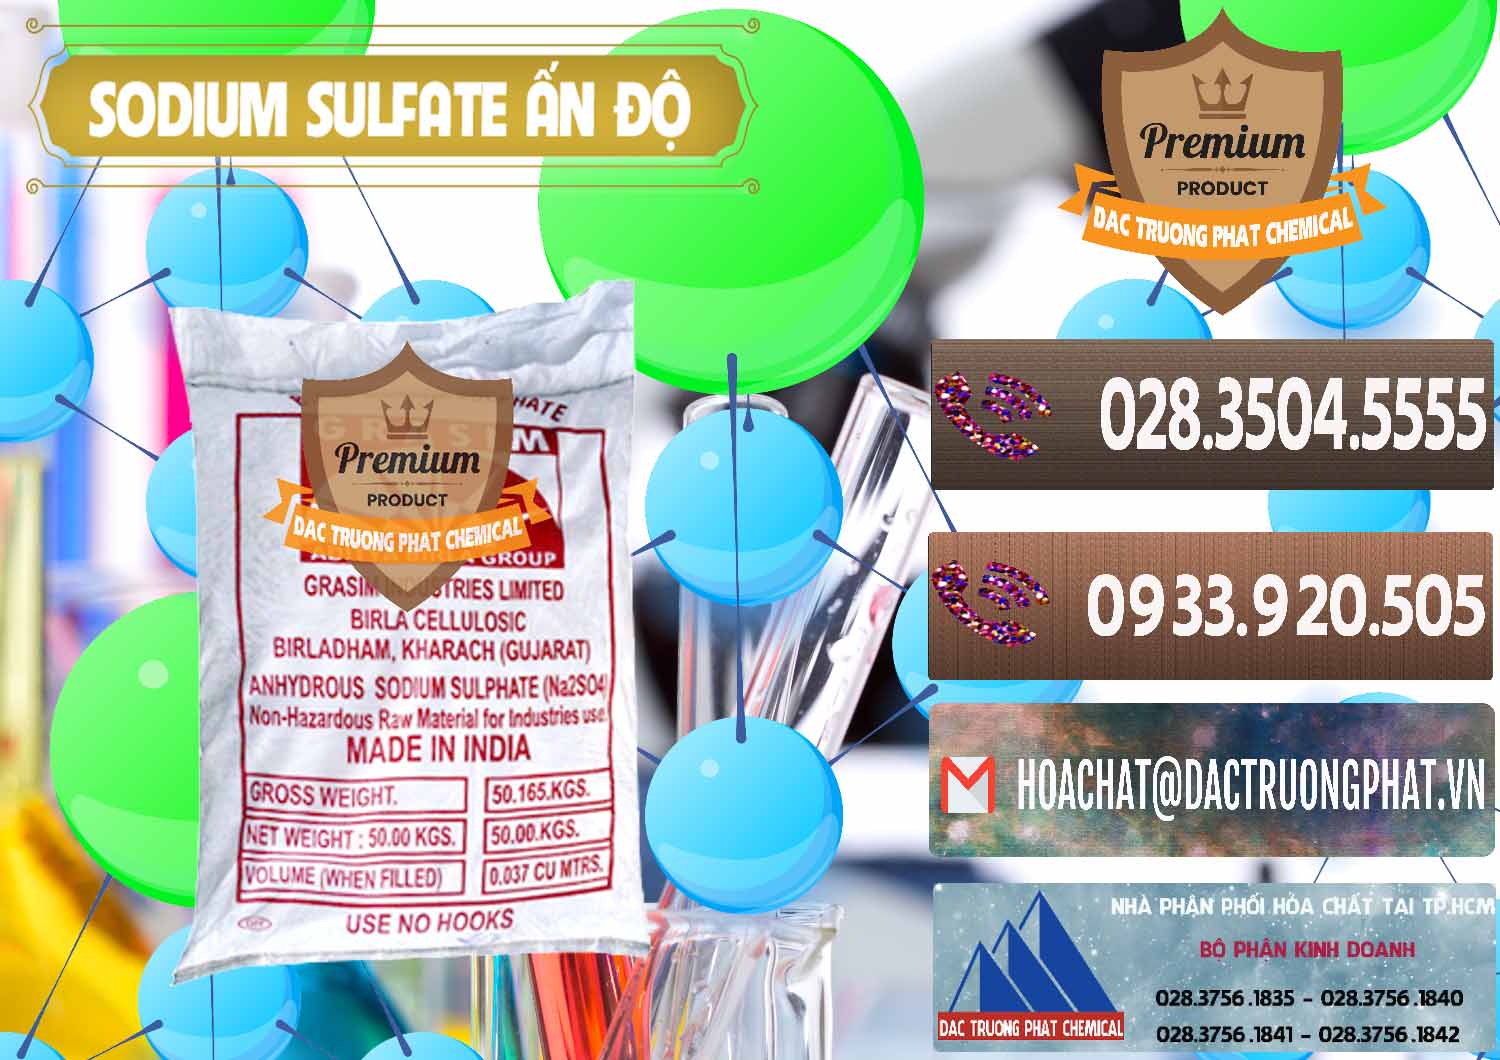 Cty bán ( cung ứng ) Sodium Sulphate - Muối Sunfat Na2SO4 Aditya Birla Grasim Ấn Độ India - 0462 - Cty chuyên phân phối & cung ứng hóa chất tại TP.HCM - hoachatviet.net